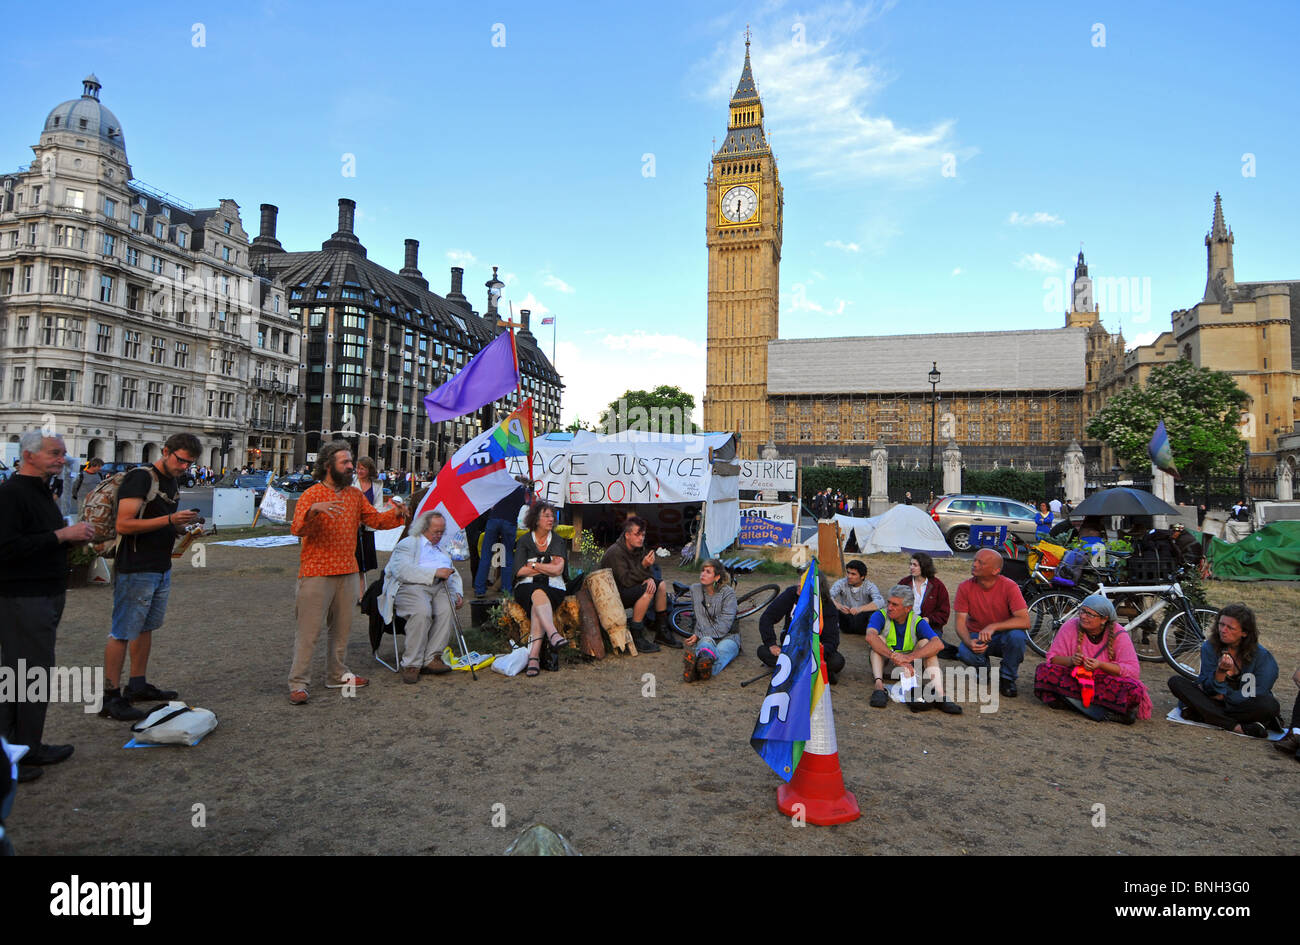 Camp de protestation au Parlement 'Carré', Westminster, Londres, Angleterre, Royaume-Uni, Juillet 2010 Banque D'Images